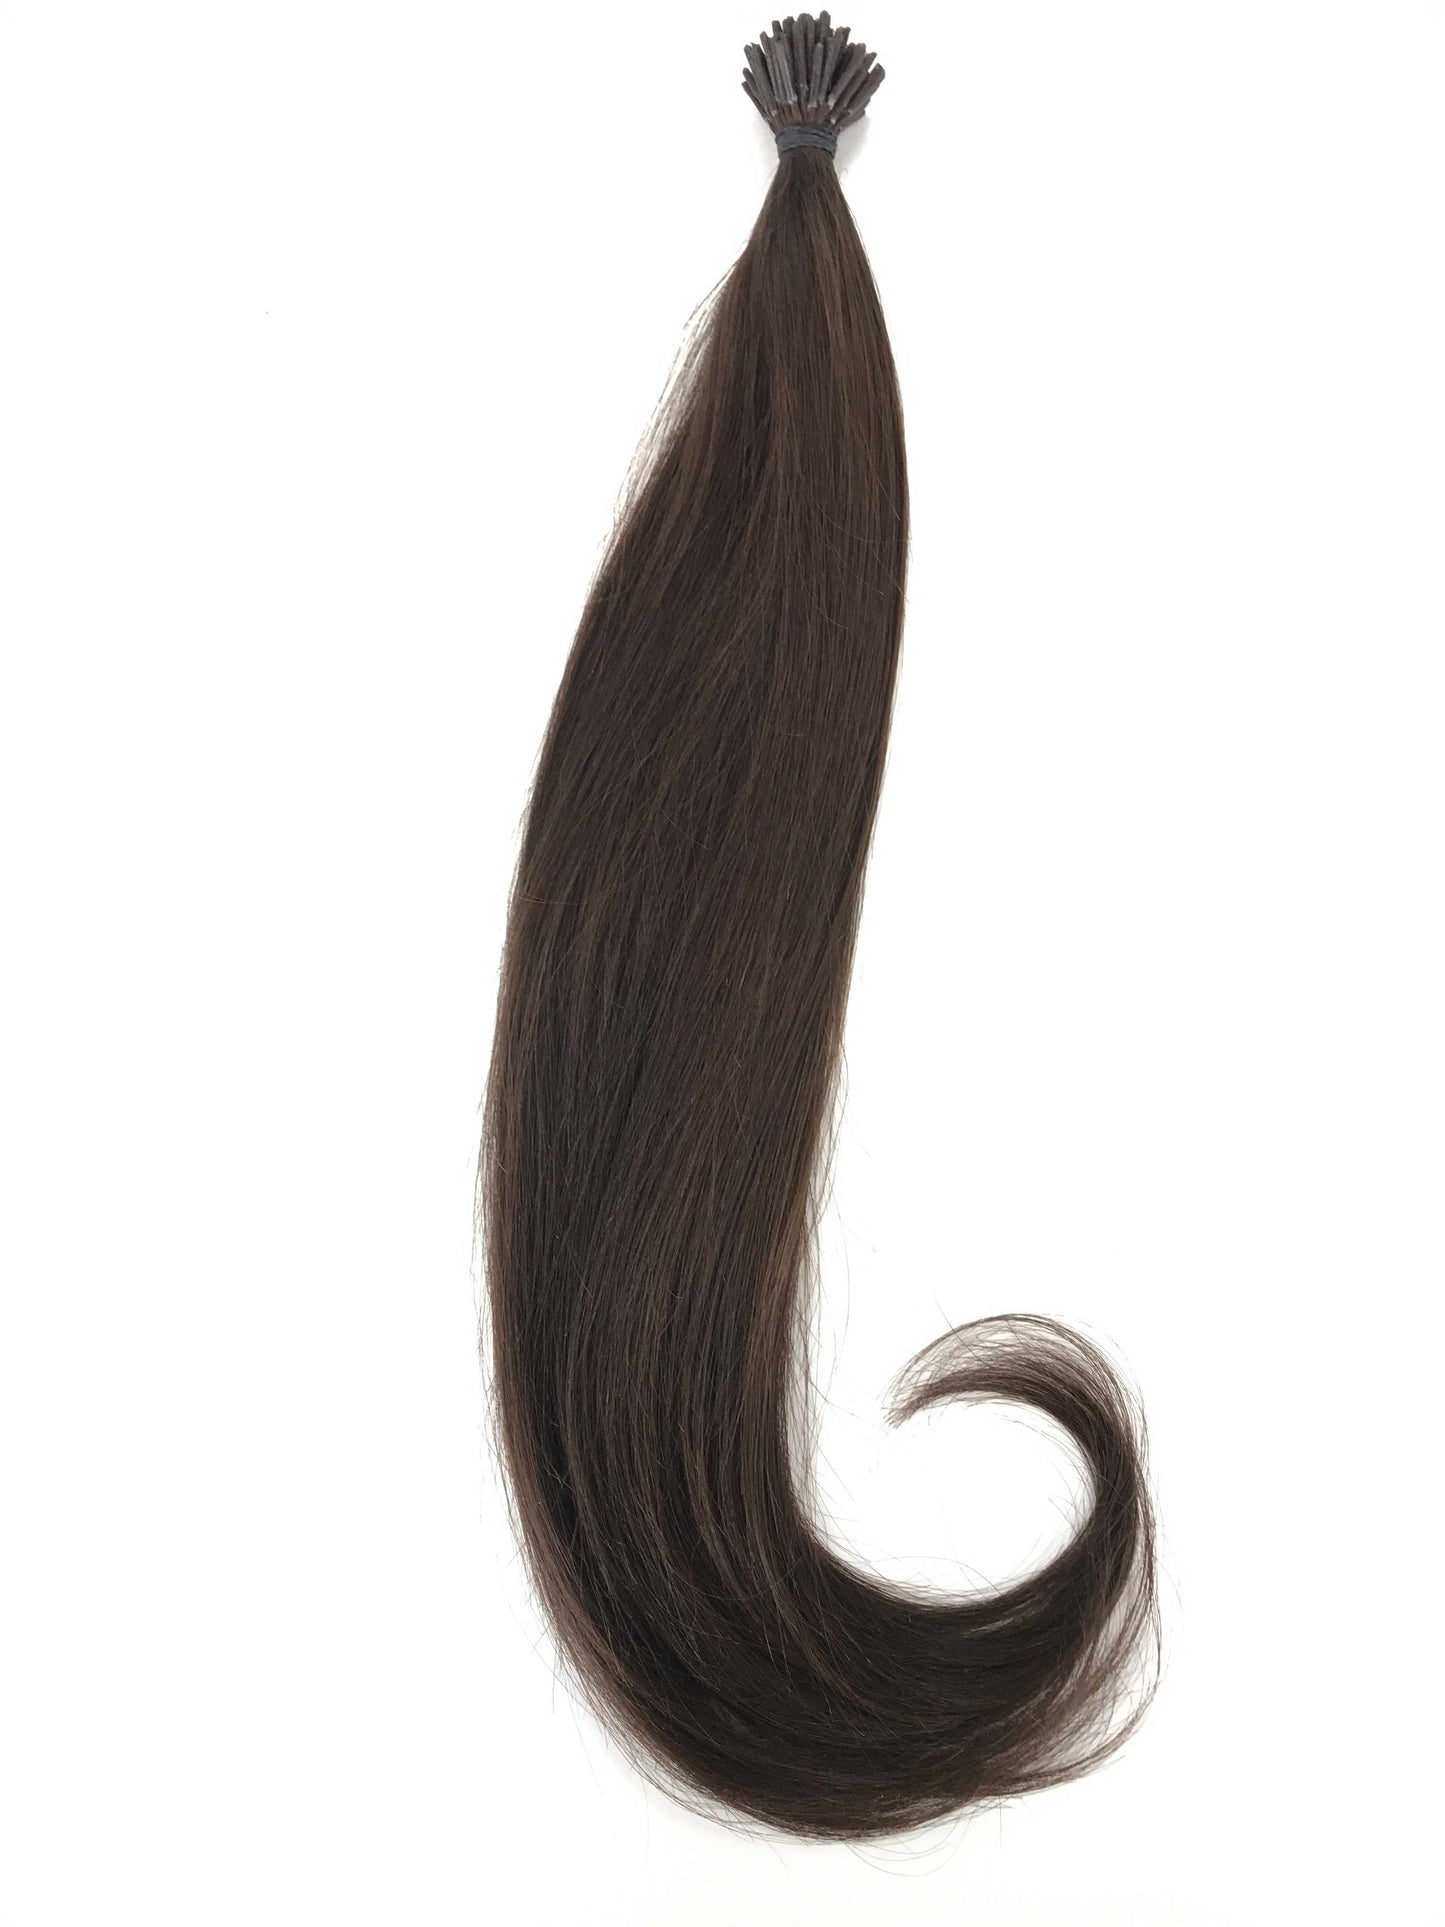 Russian Virgin Human Hair Extensions, 0,7g i-Tip Micro Rings-Jungfruhår & skönhet, De bästa hårförlängningarna, Real Virgin Human Hair.